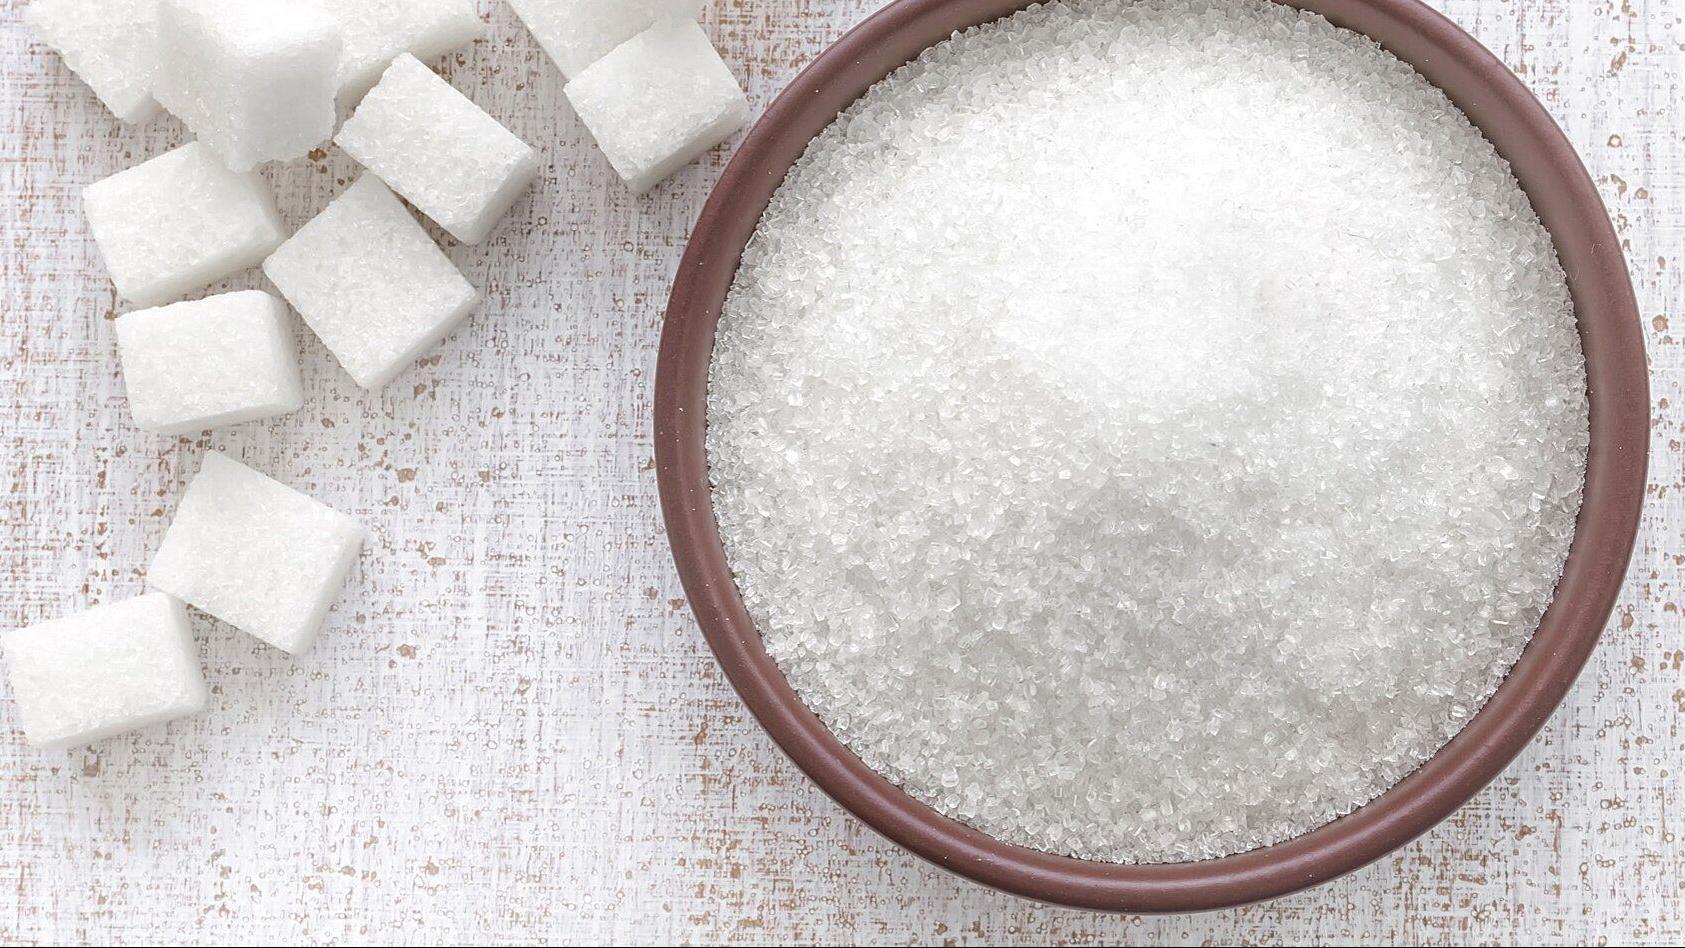 فرض ضميمة على مستوردات مادة السكر الأبيض.. وتوجه حكومي لرفع الدعم عن السكر حرصاً على الصحة العامة